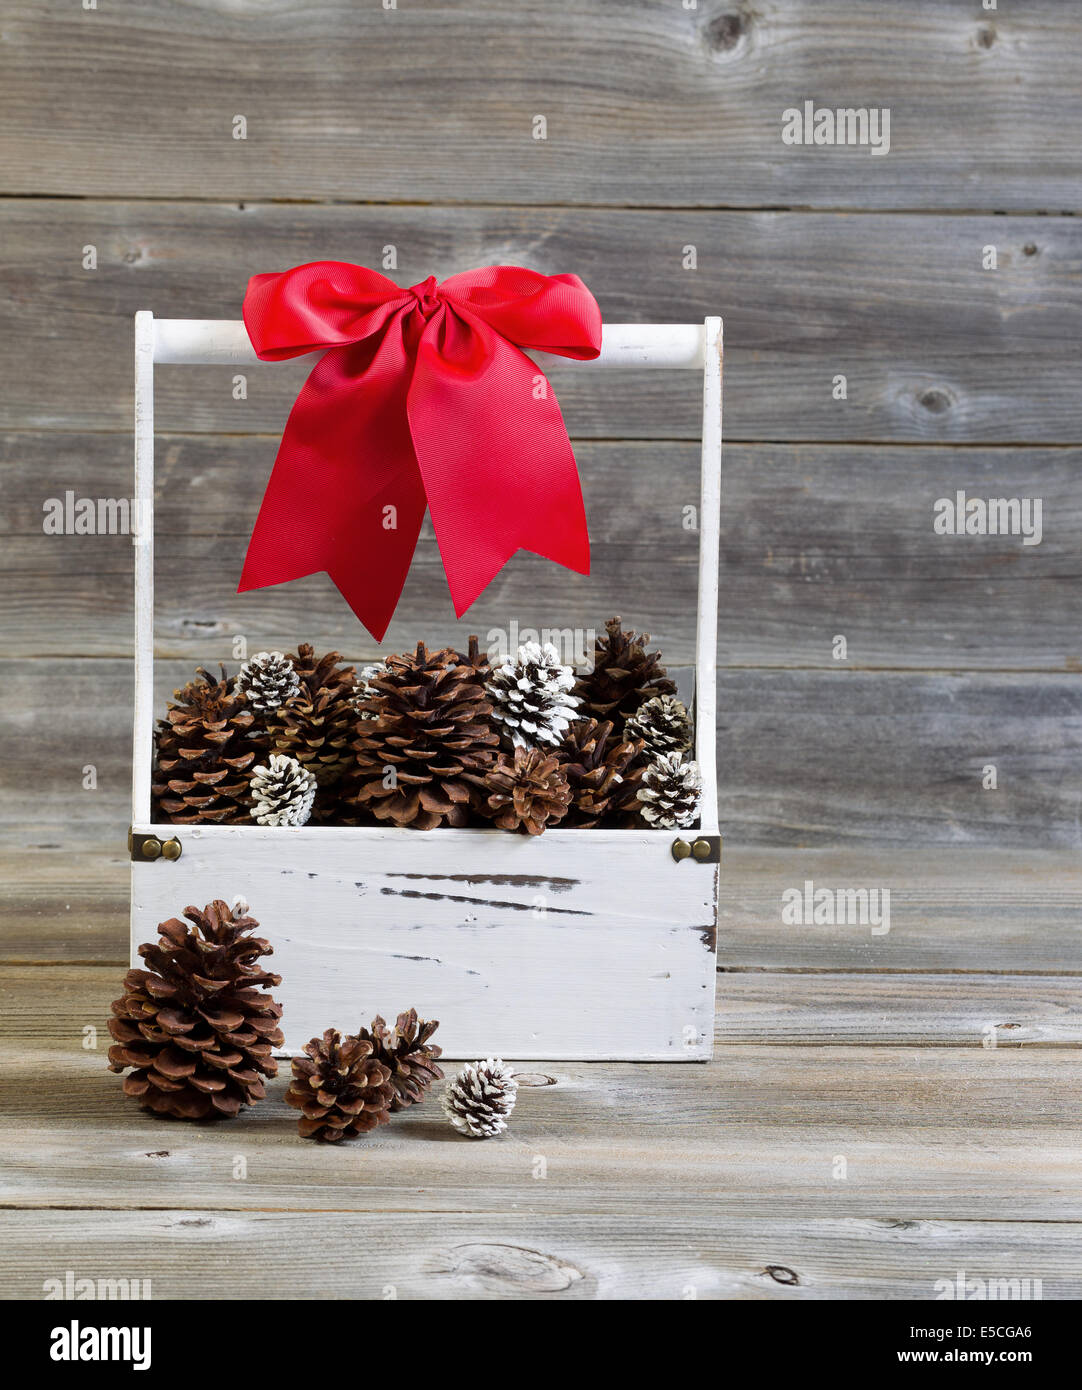 Vue frontale d'une verticale du support en bois rempli de pommes de pin et grand arc rouge pour Noël sur bois rustique Banque D'Images